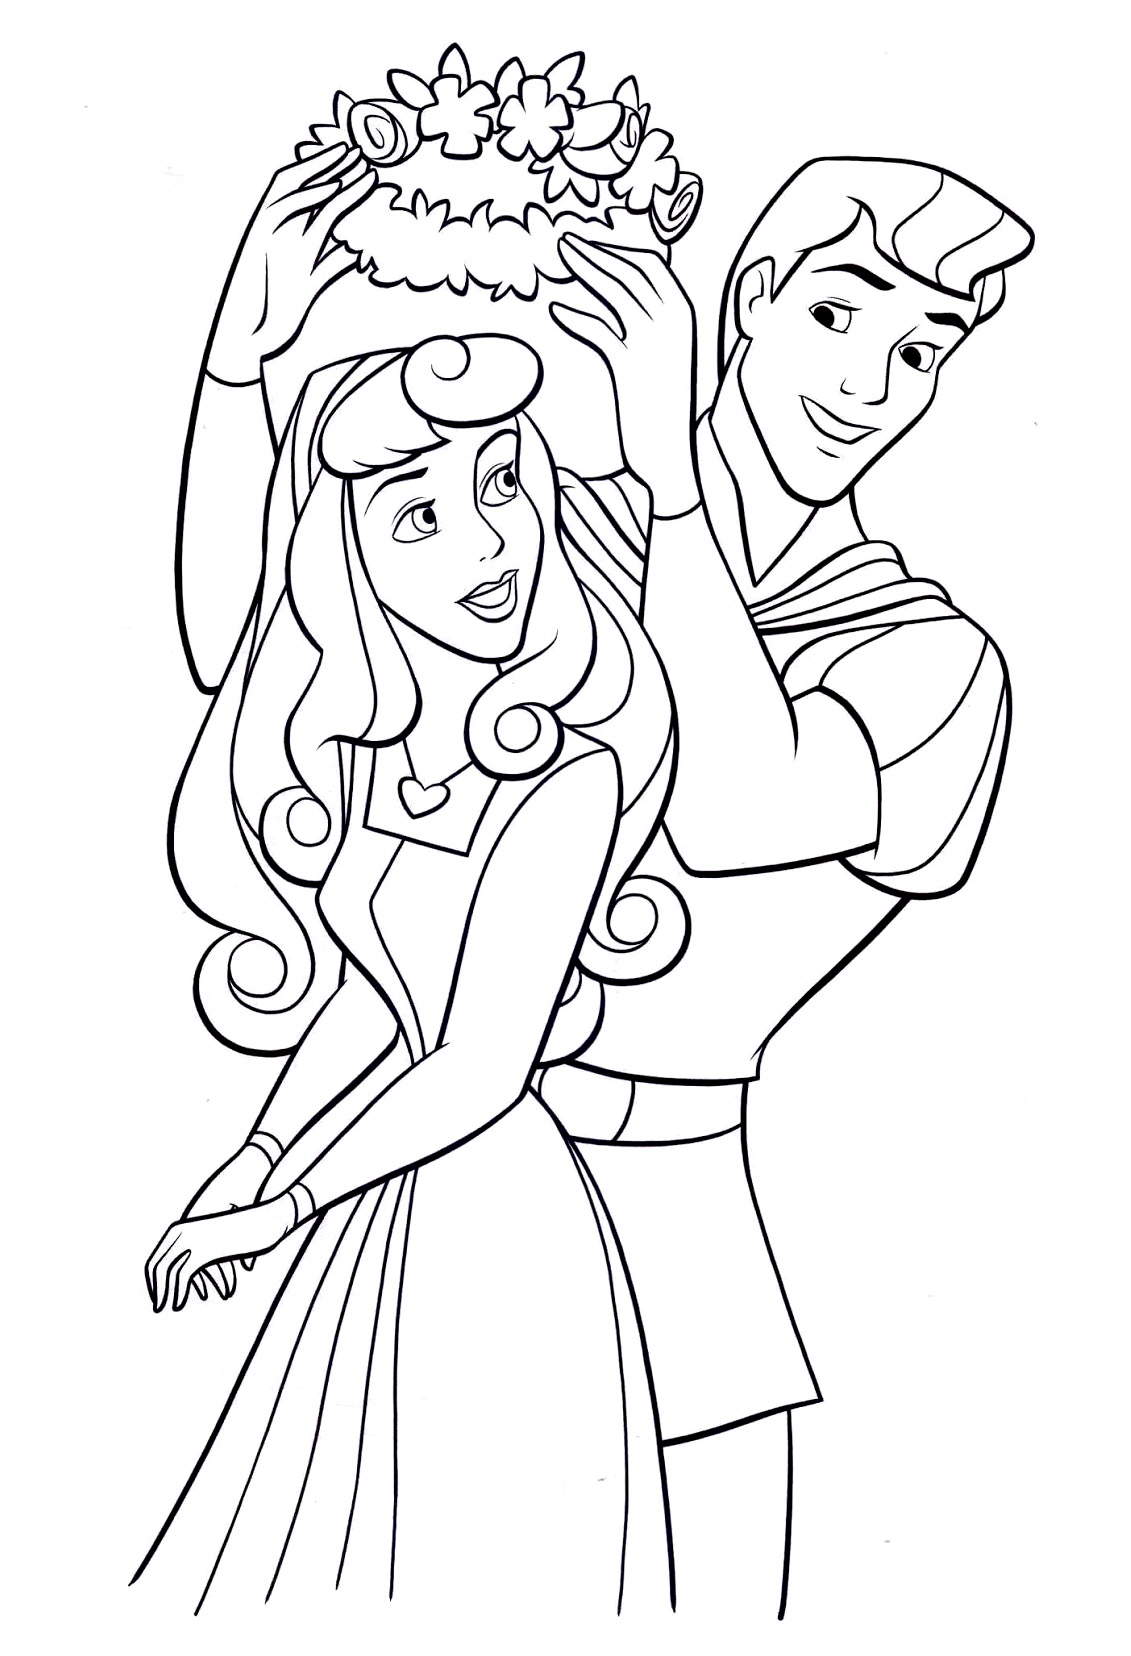 Imagem da Princesa Aurora com o seu príncipe